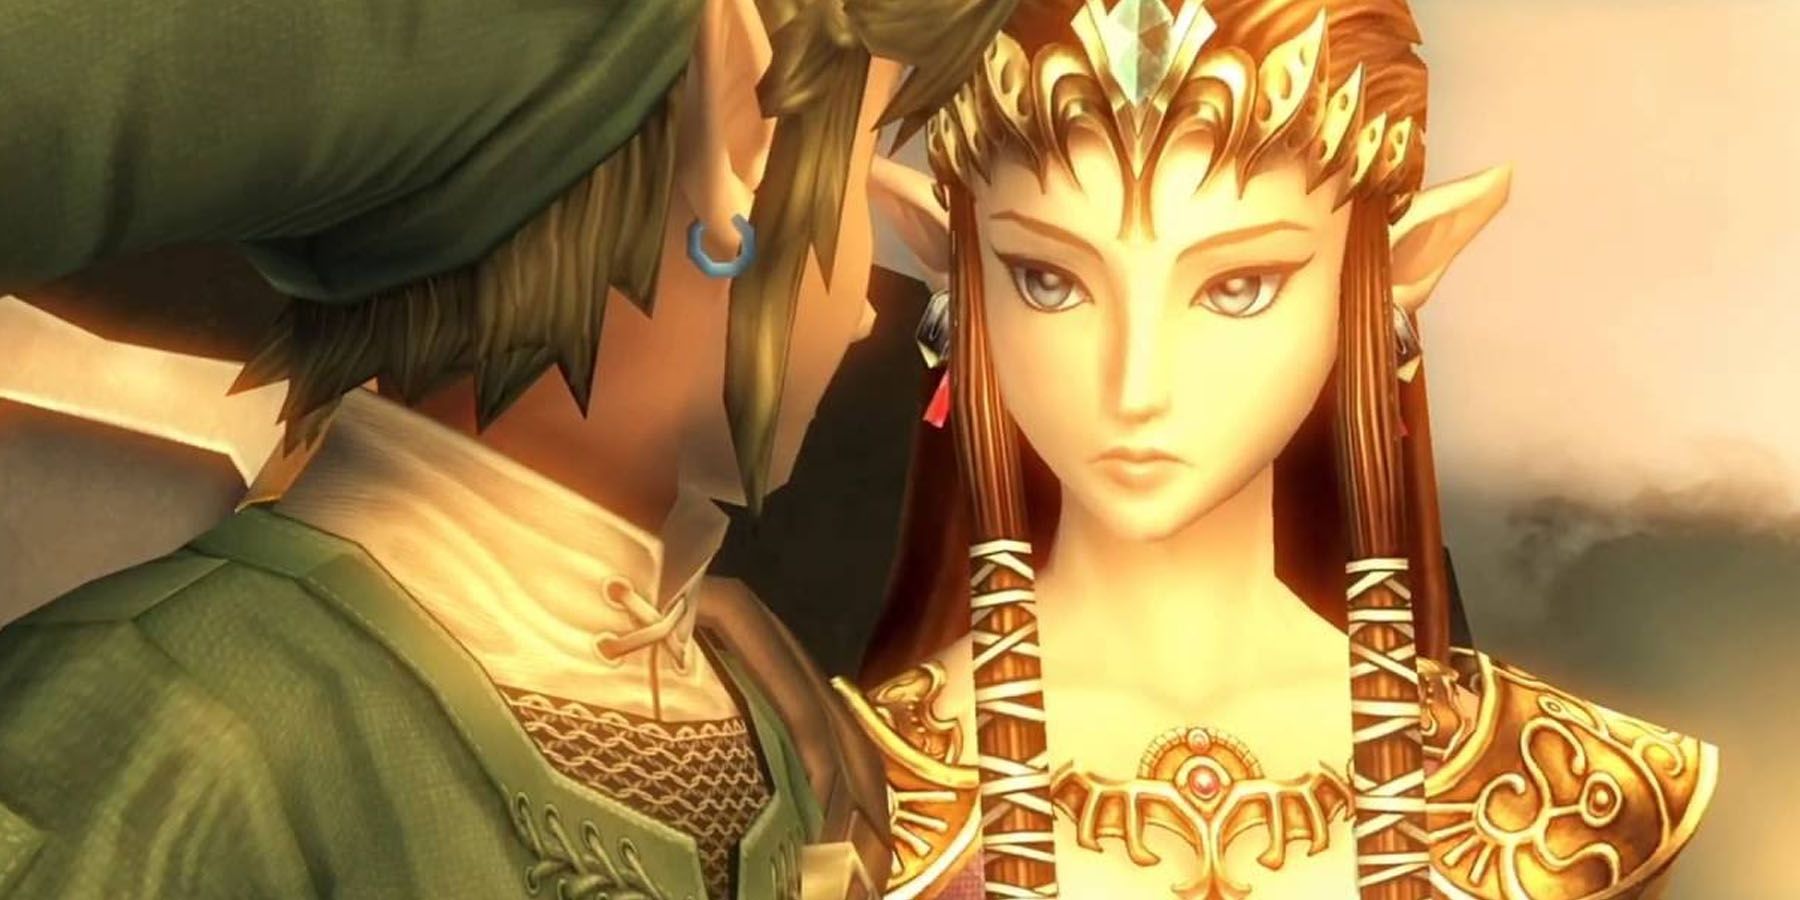 A screenshot of Link and Princess Zelda at sunset in Legend of Zelda: Twilight Princess.